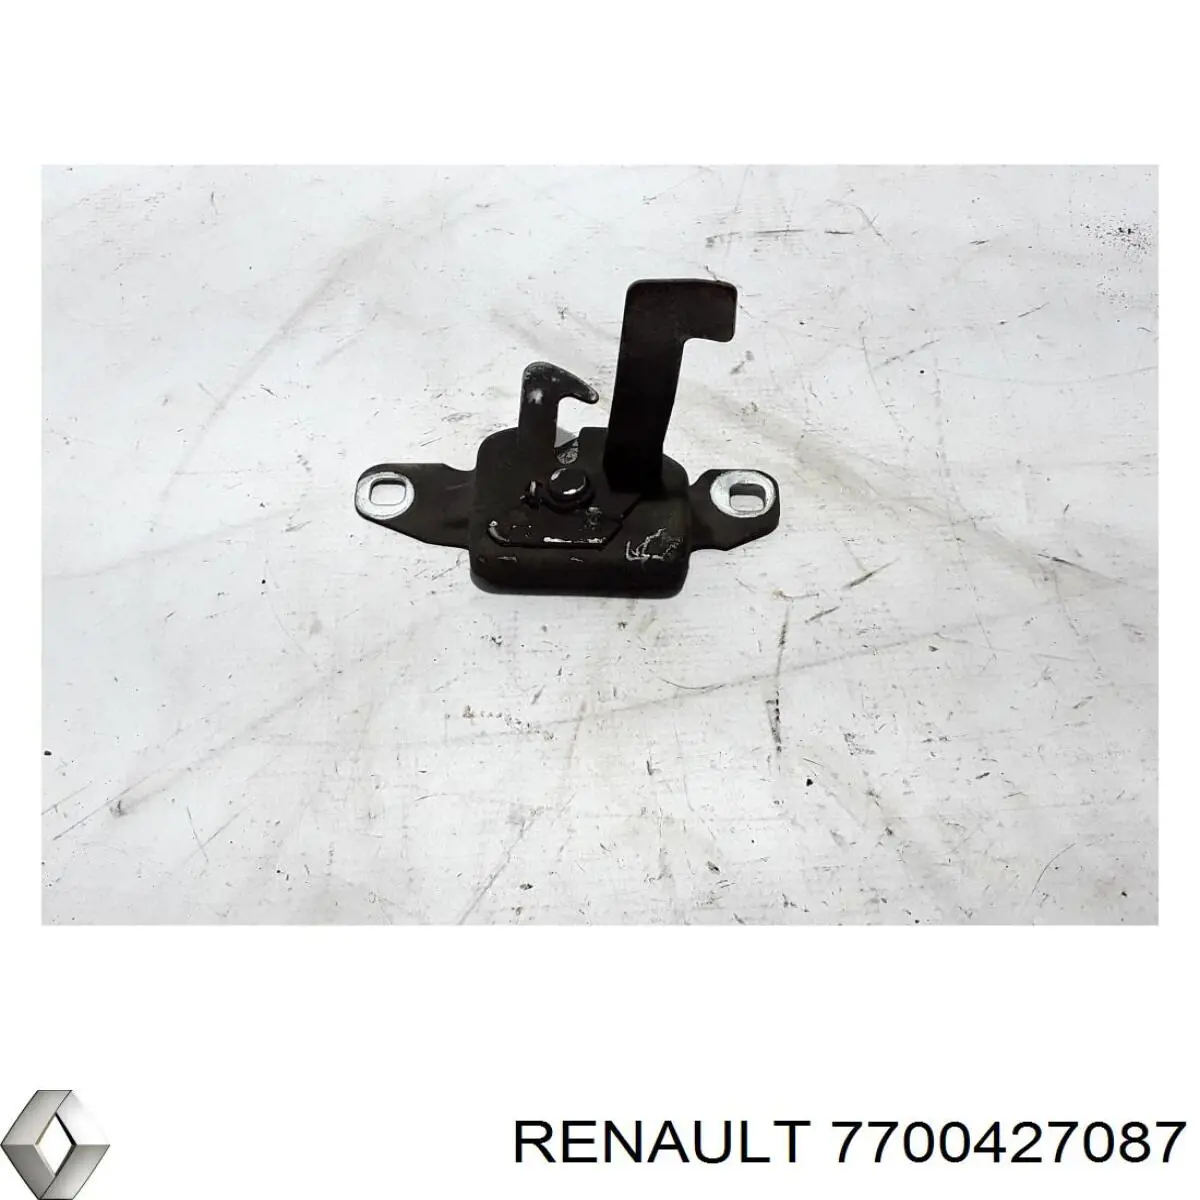 427087 Renault (RVI) cerradura del capó de motor